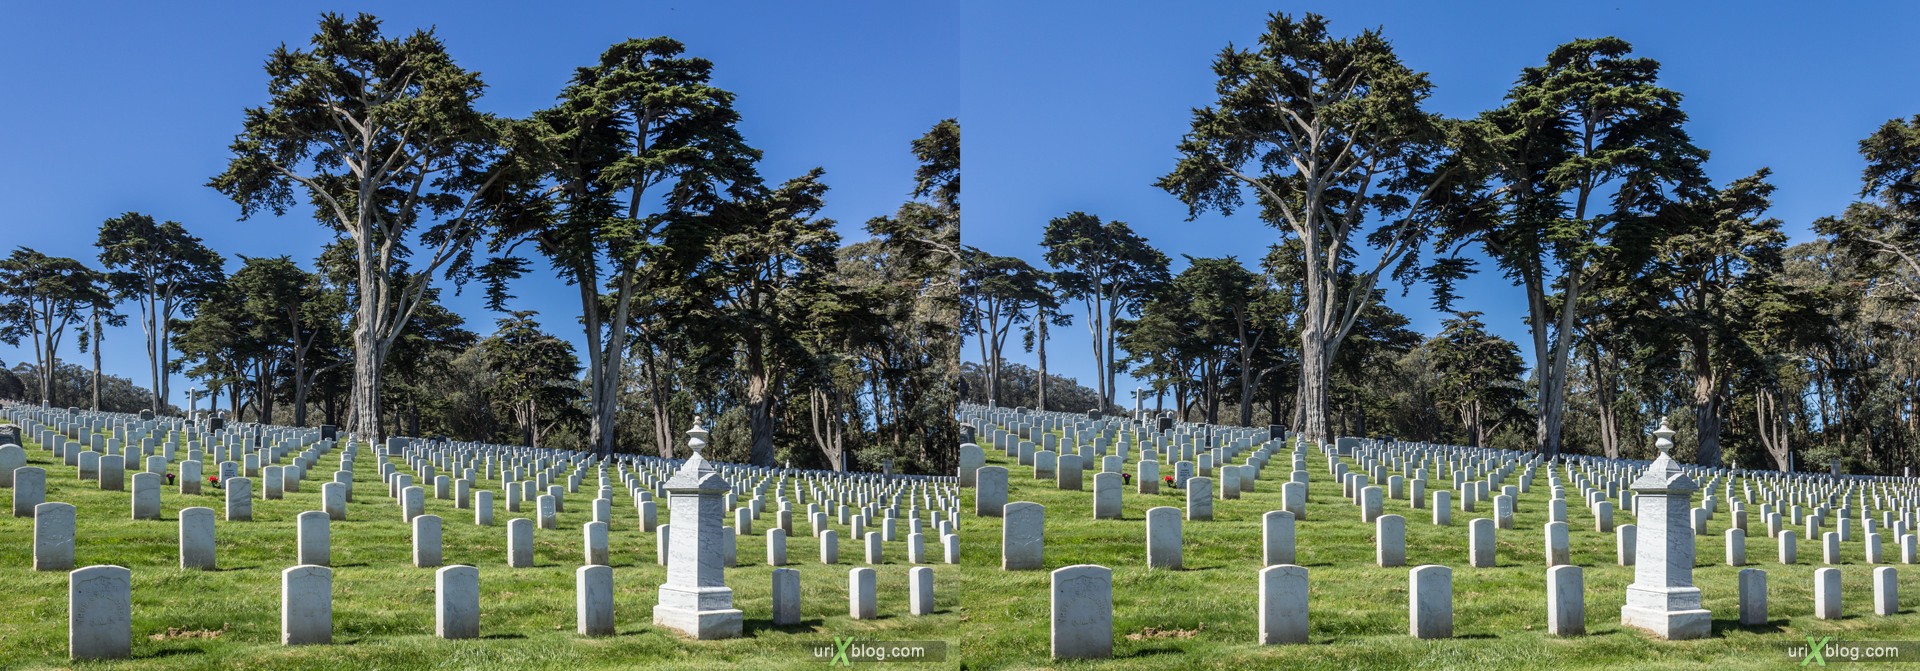 2013, США, Калифорния, Национальное кладбище Сан Франциско, 3D, перекрёстная стереопара, стерео, стереопара